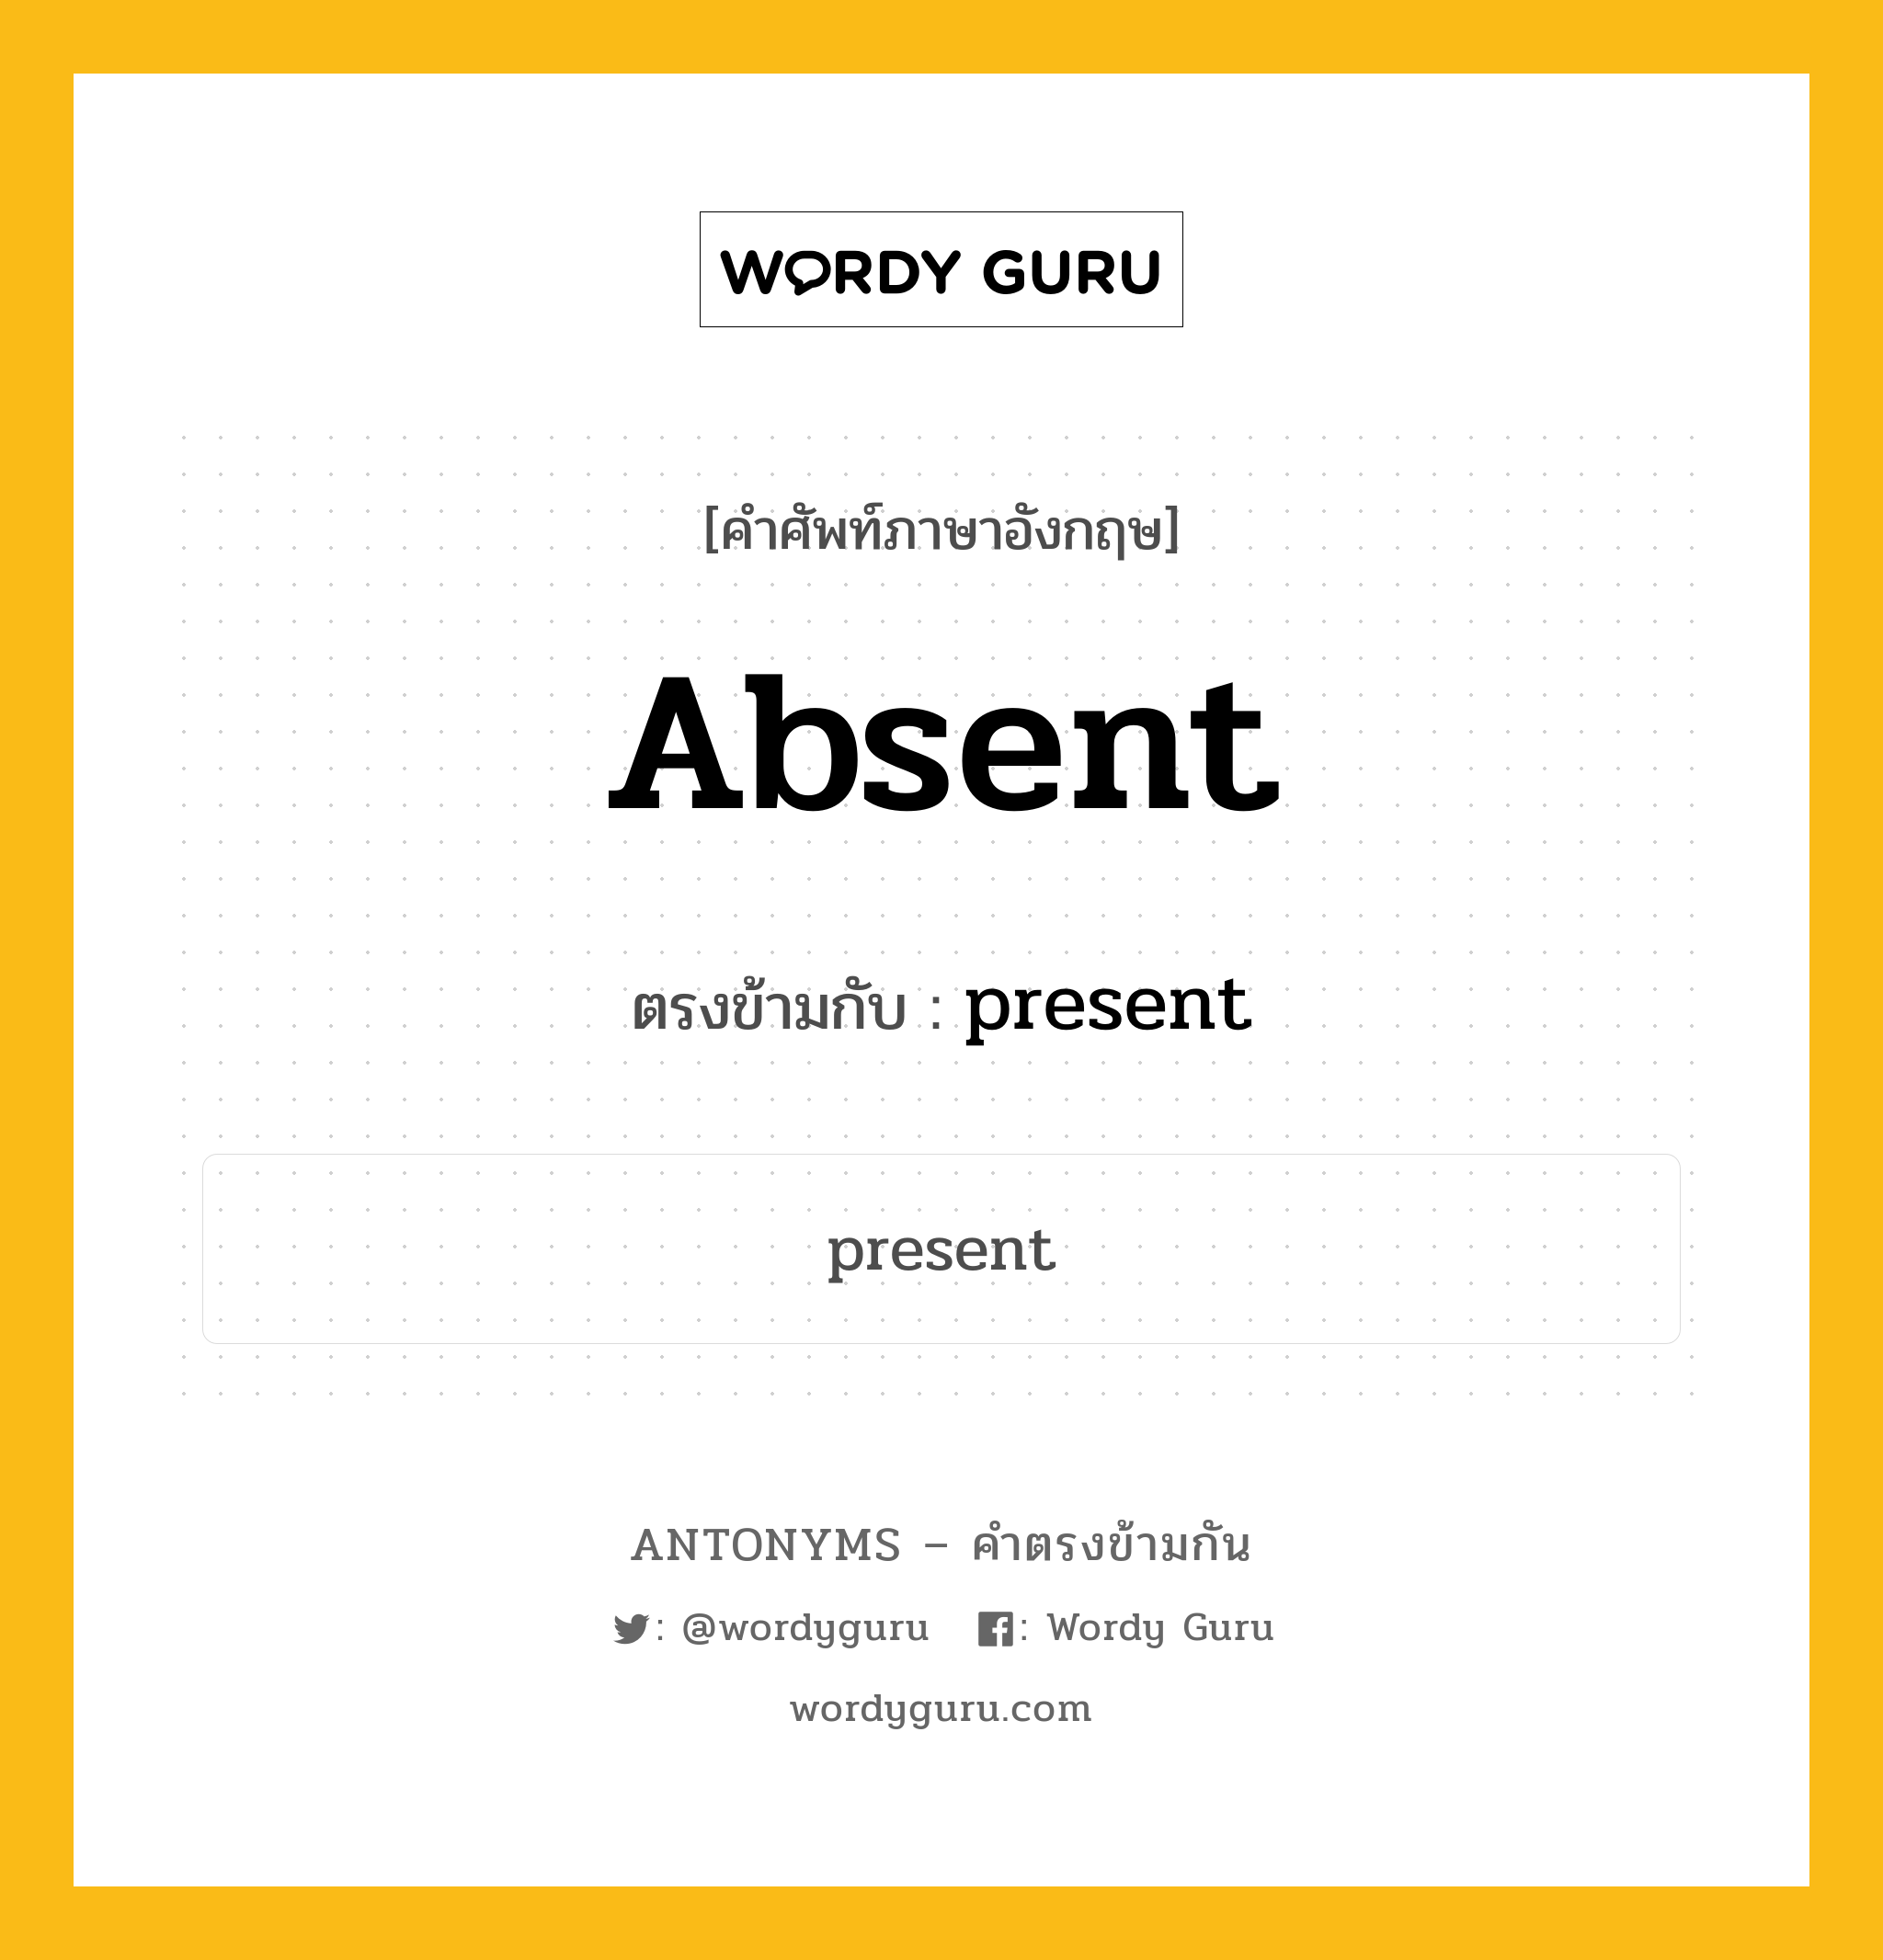 absent เป็นคำตรงข้ามกับคำไหนบ้าง?, คำศัพท์ภาษาอังกฤษ absent ตรงข้ามกับ present หมวด present